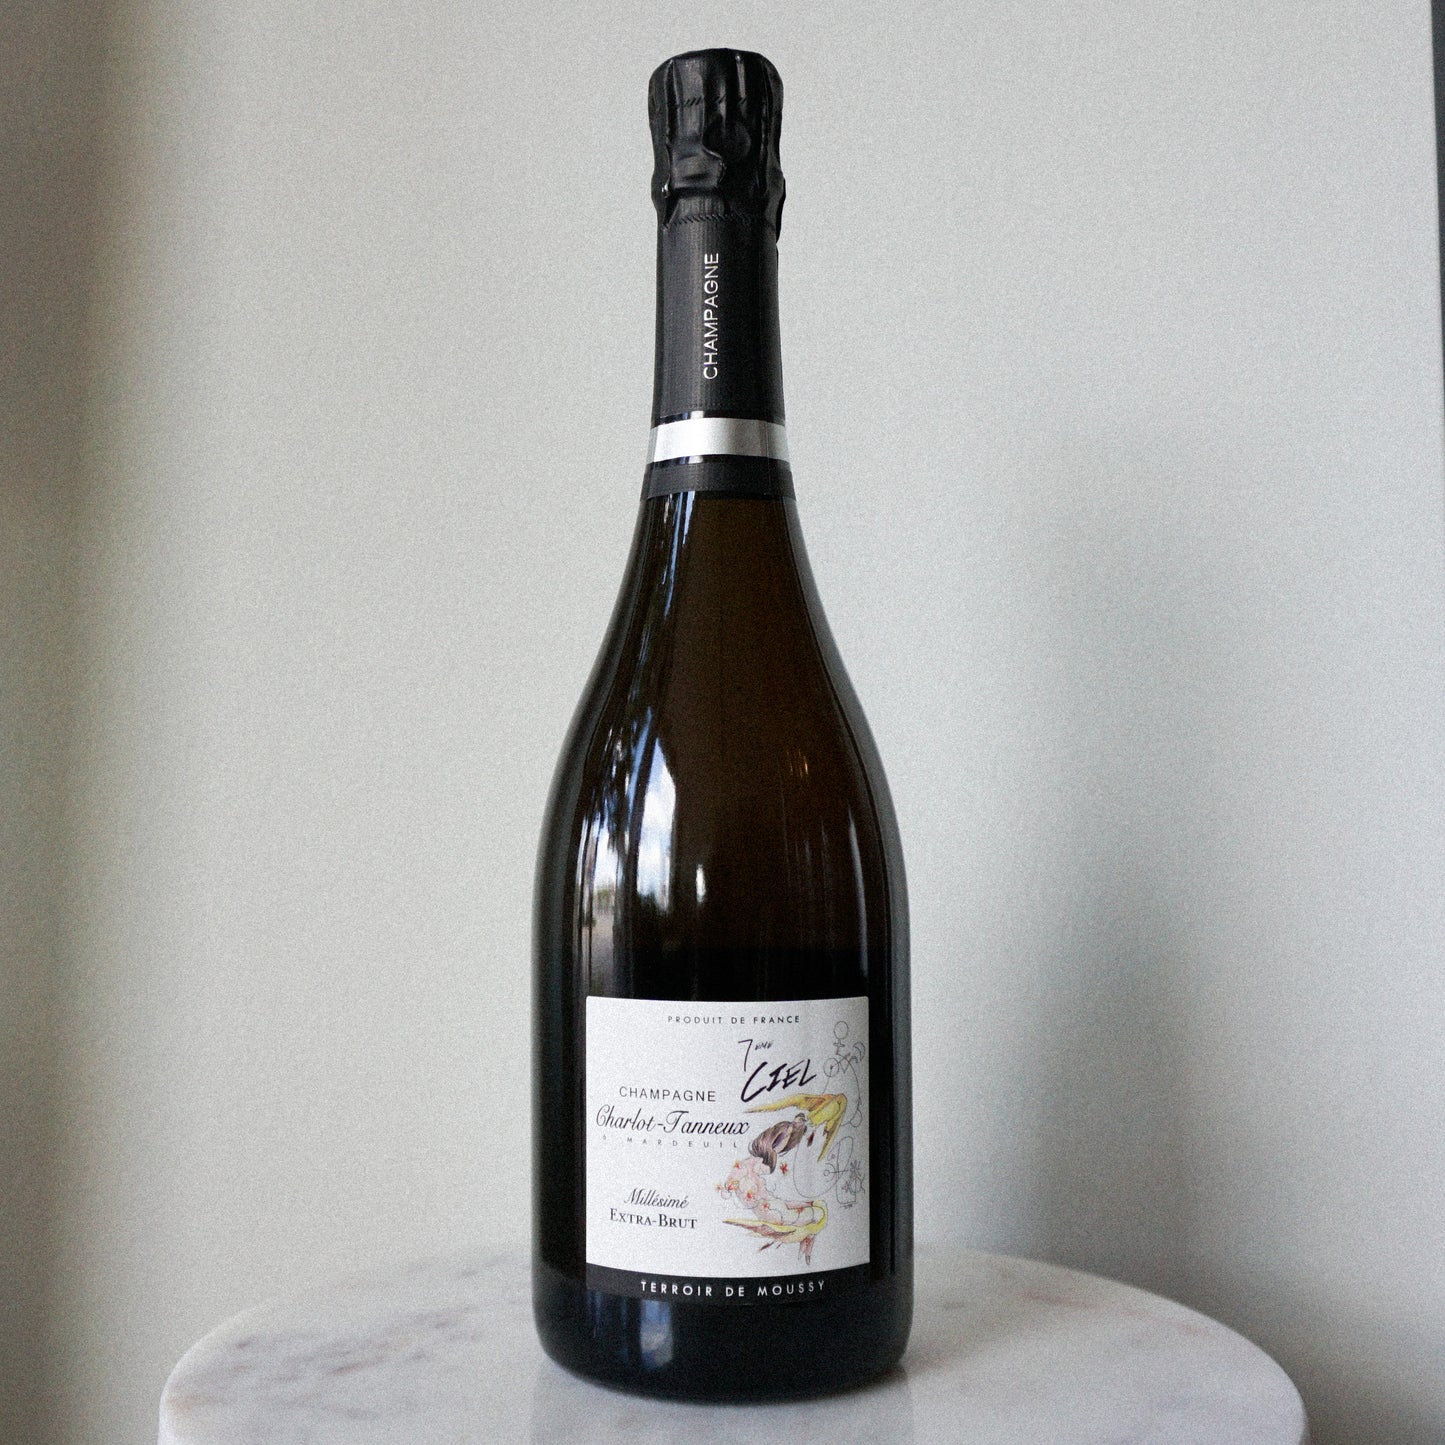 Champagne Charlot-Tanneux 7ième Ciel 2018